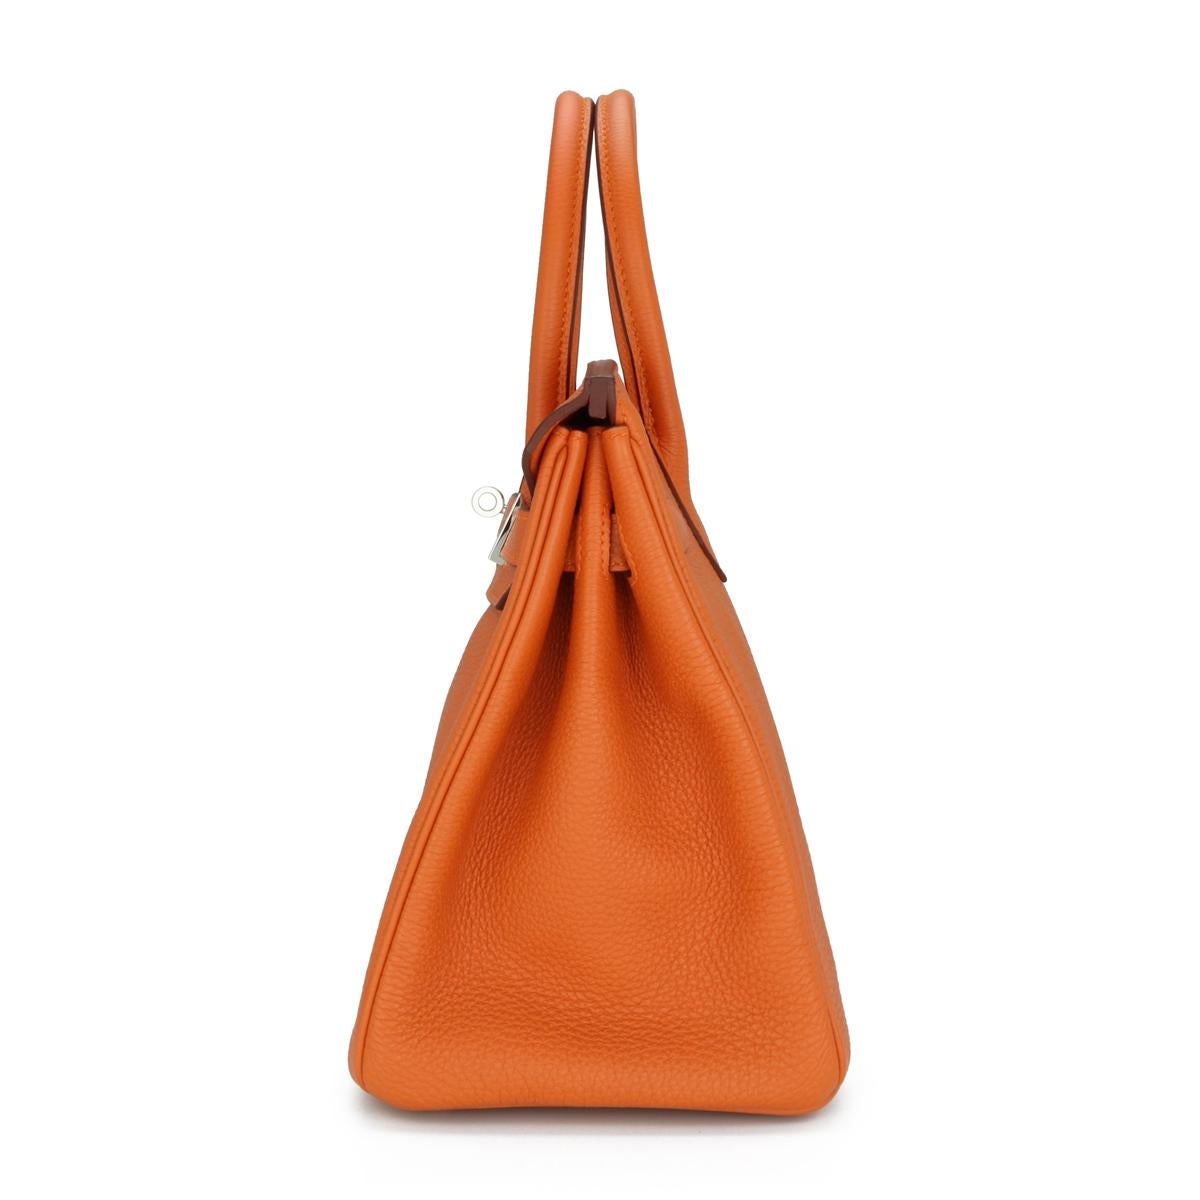 Hermès Birkin Bag 30cm Orange Togo Leather with Palladium Hardware Stamp M 2009 1